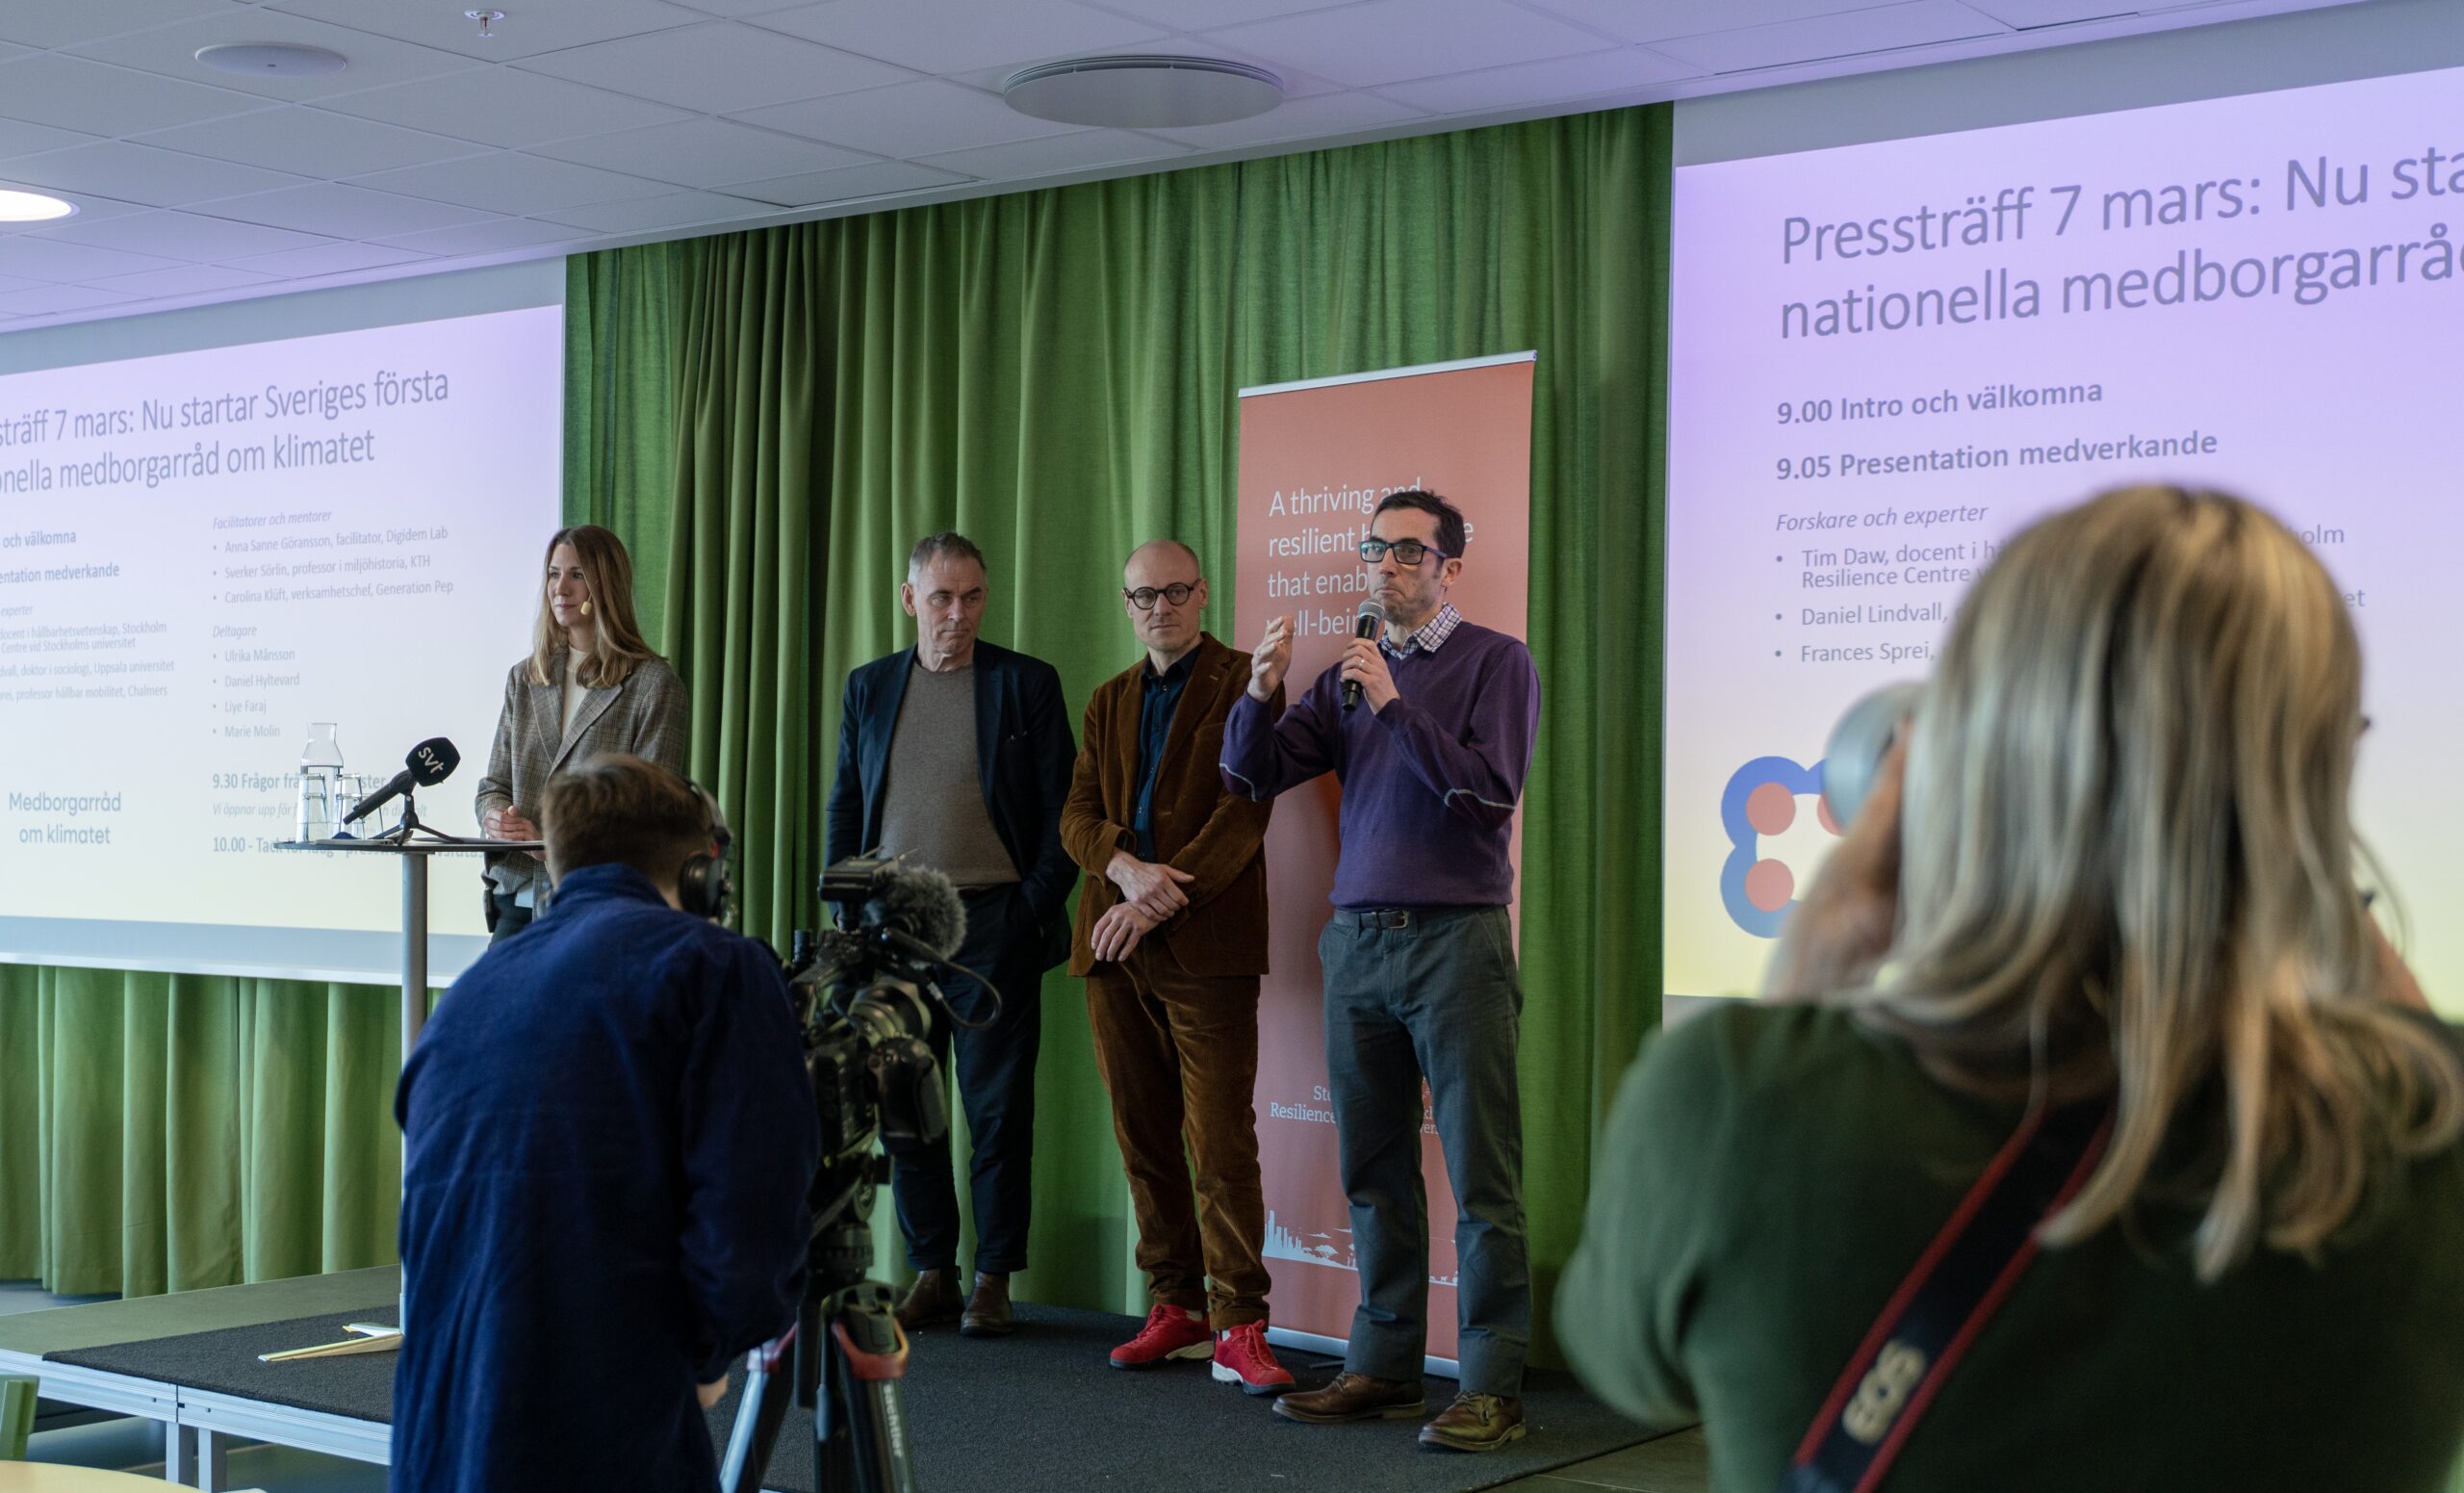 Forskare som leder Medborgarrådet om klimatet bjöd in till presskonferens på Stockholm Resilience Centre för att berätta om initiativet. Foto: Johannes Ernstberger, Stockholm Resilience Centre